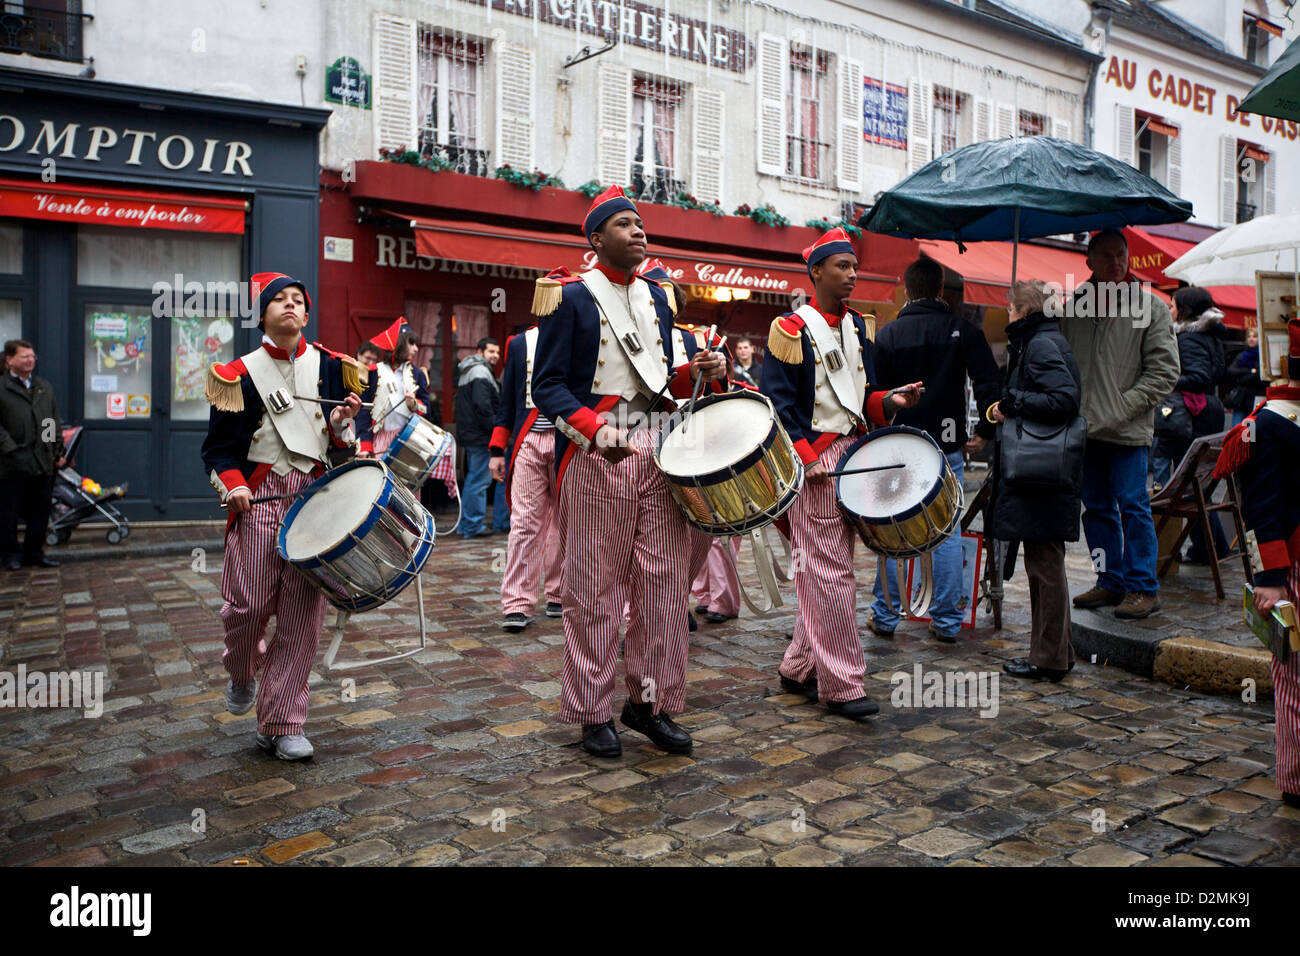 Giovani uomini marzo con tamburi in costumi tradizionali durante una performance in piazza sulla sommità di Montmartre, a Parigi, Francia Foto Stock